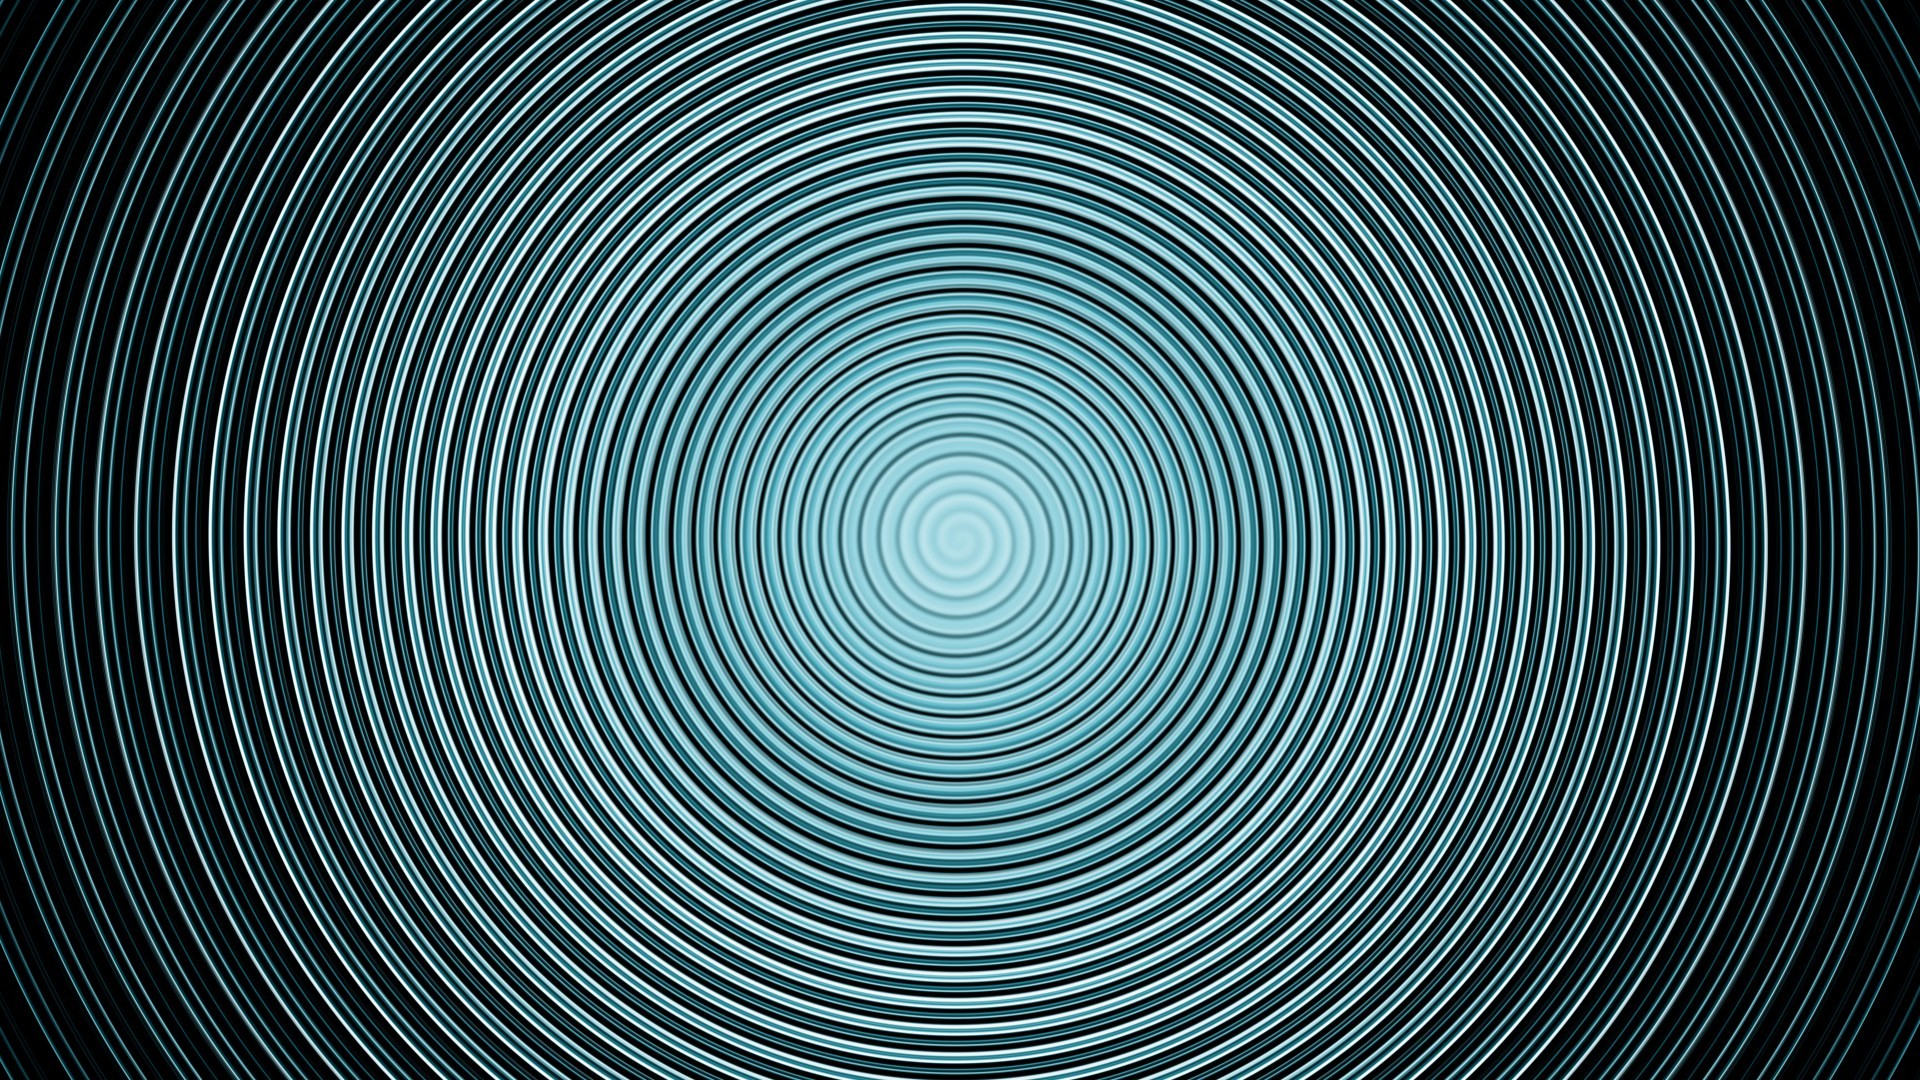 General 1920x1080 abstract circle optical illusion digital art